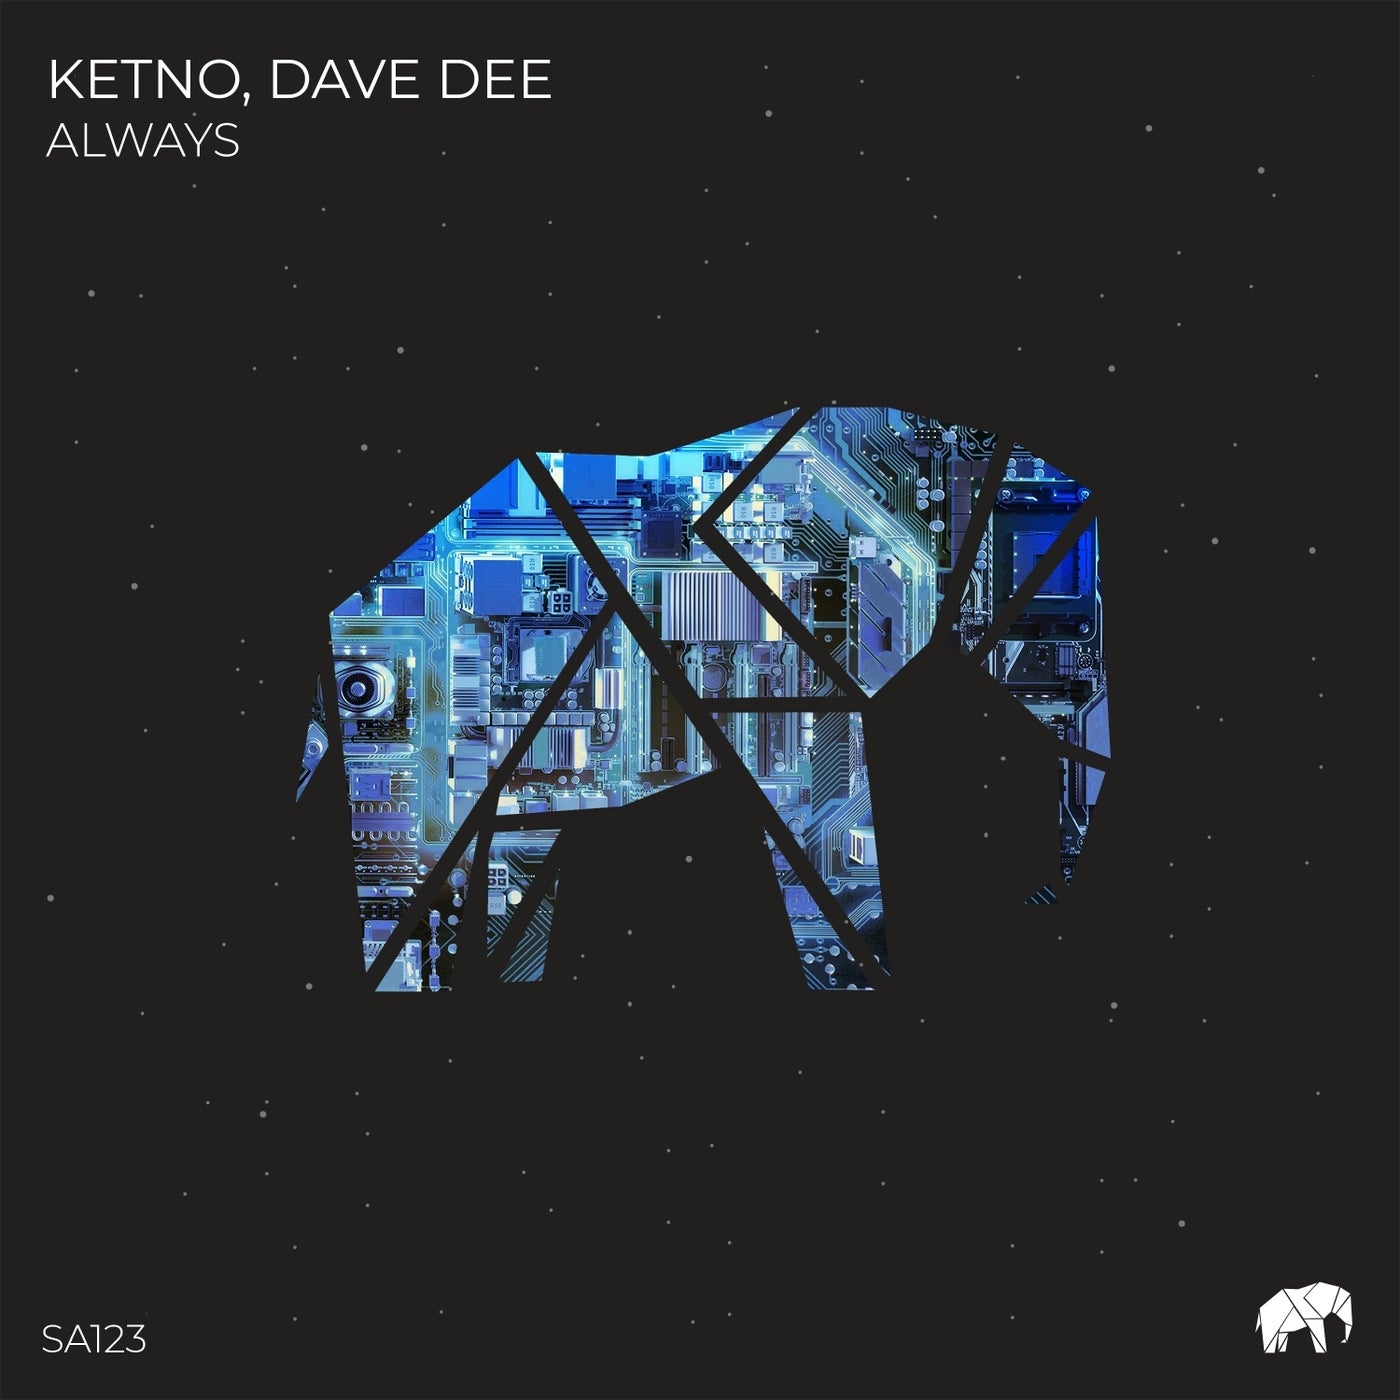 image cover: Dave Dee, Ketno - Always / SA123